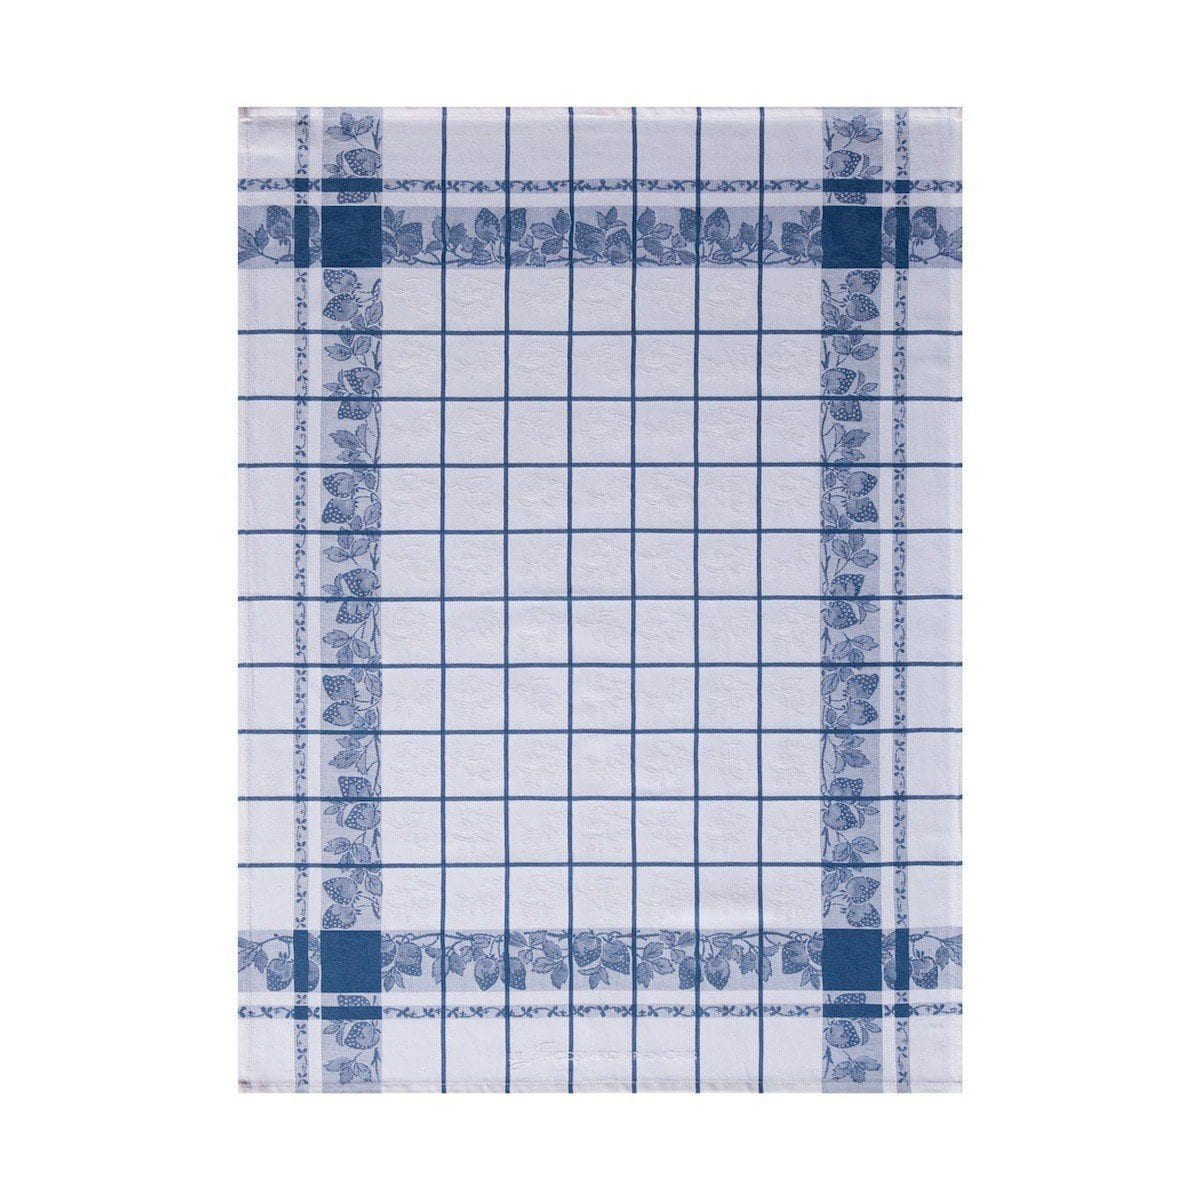 Fraises French Blue Tea Towel Set of 4 by Le Jacquard Francais